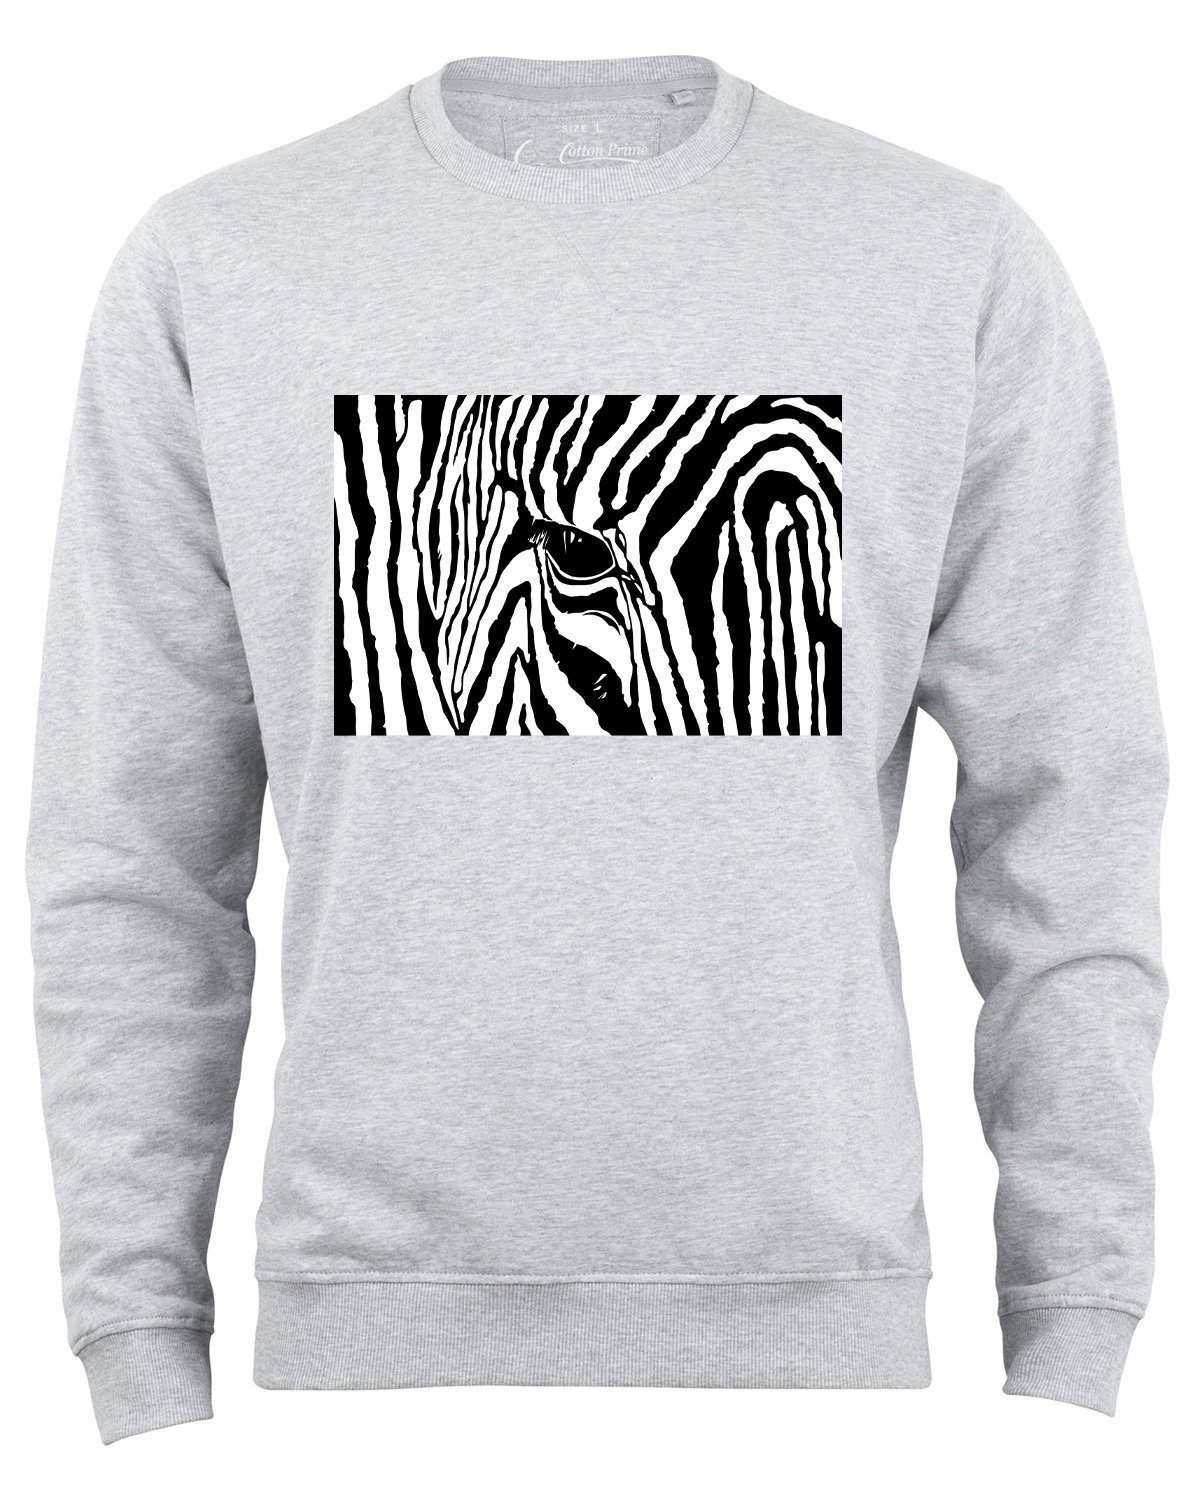 Cotton Prime® Sweatshirt Black & White Zebra Eye mit weichem Innenfleece Grau-Melange